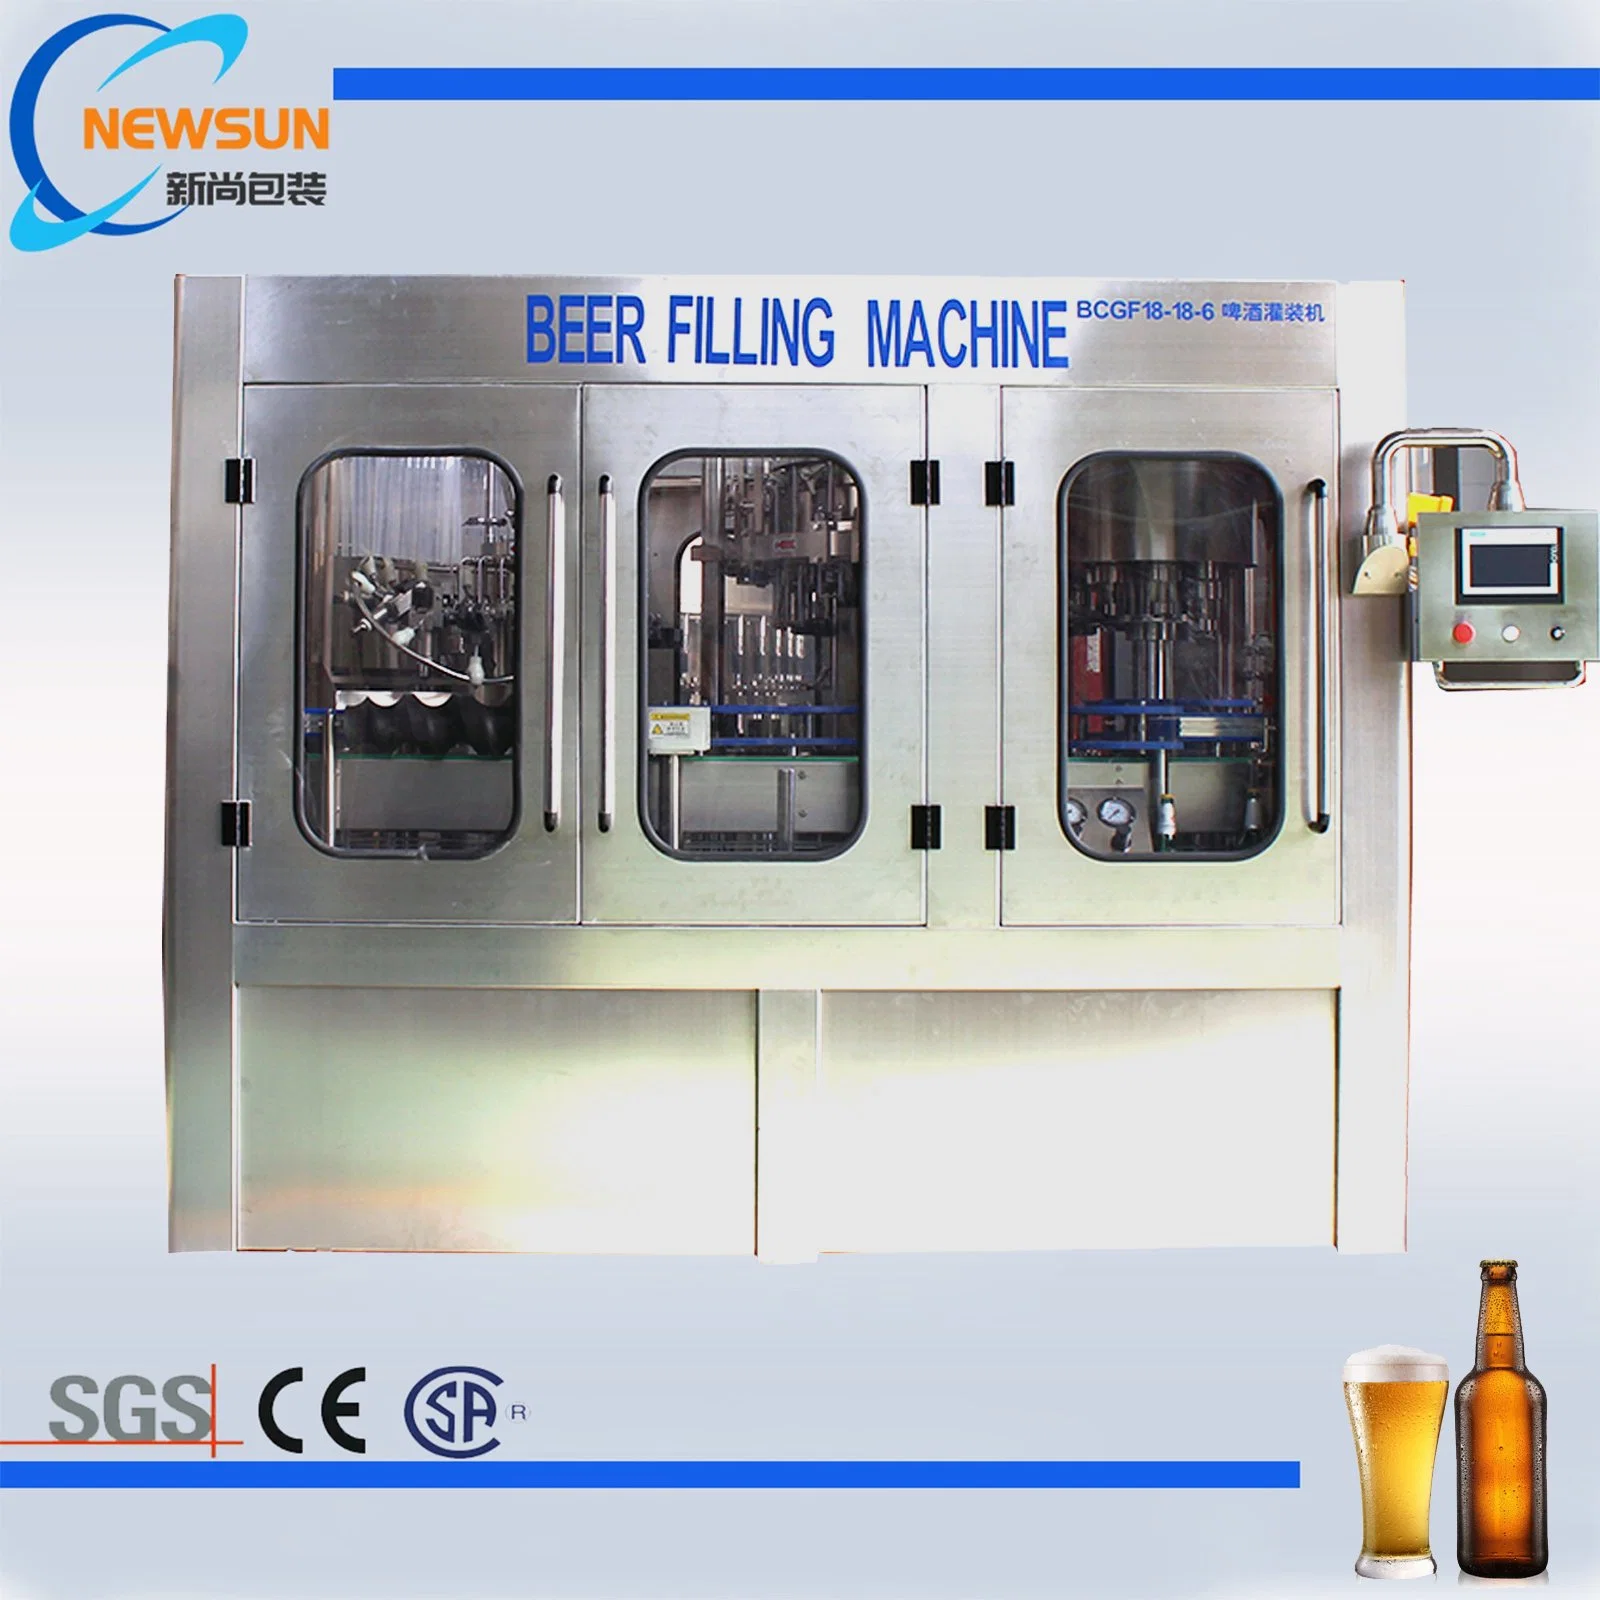 Newsun изготовителя машины автоматическая питьевой воды розлива напитков завод пиво оборудование для литья под давлением для выдувания стеклянных бутылок из ПЭТ мойки наполнения механизм подписывания